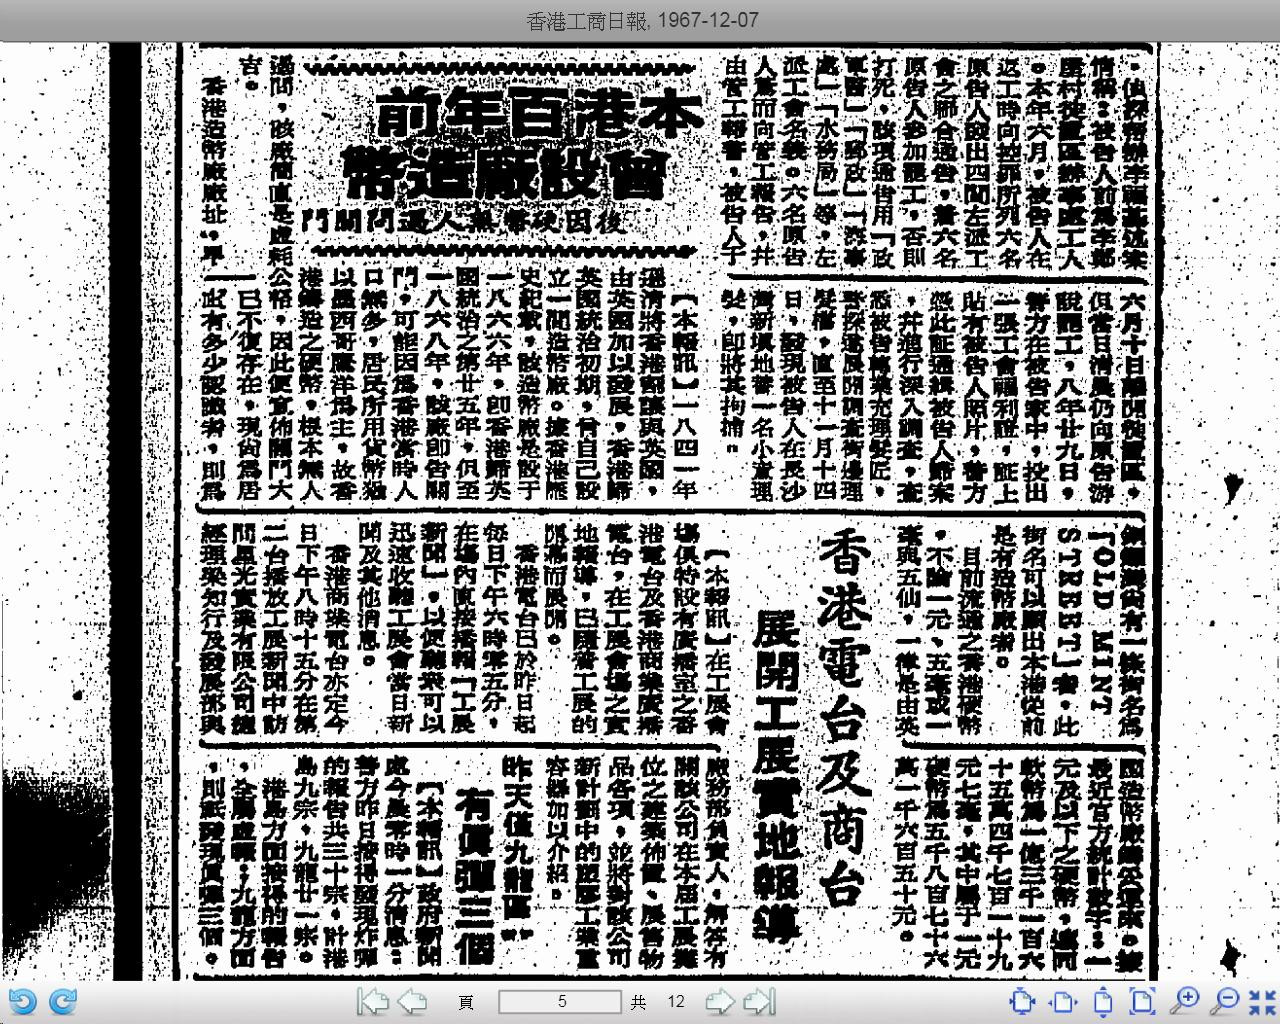 香港工商日報 1967-12-07 (5).jpg